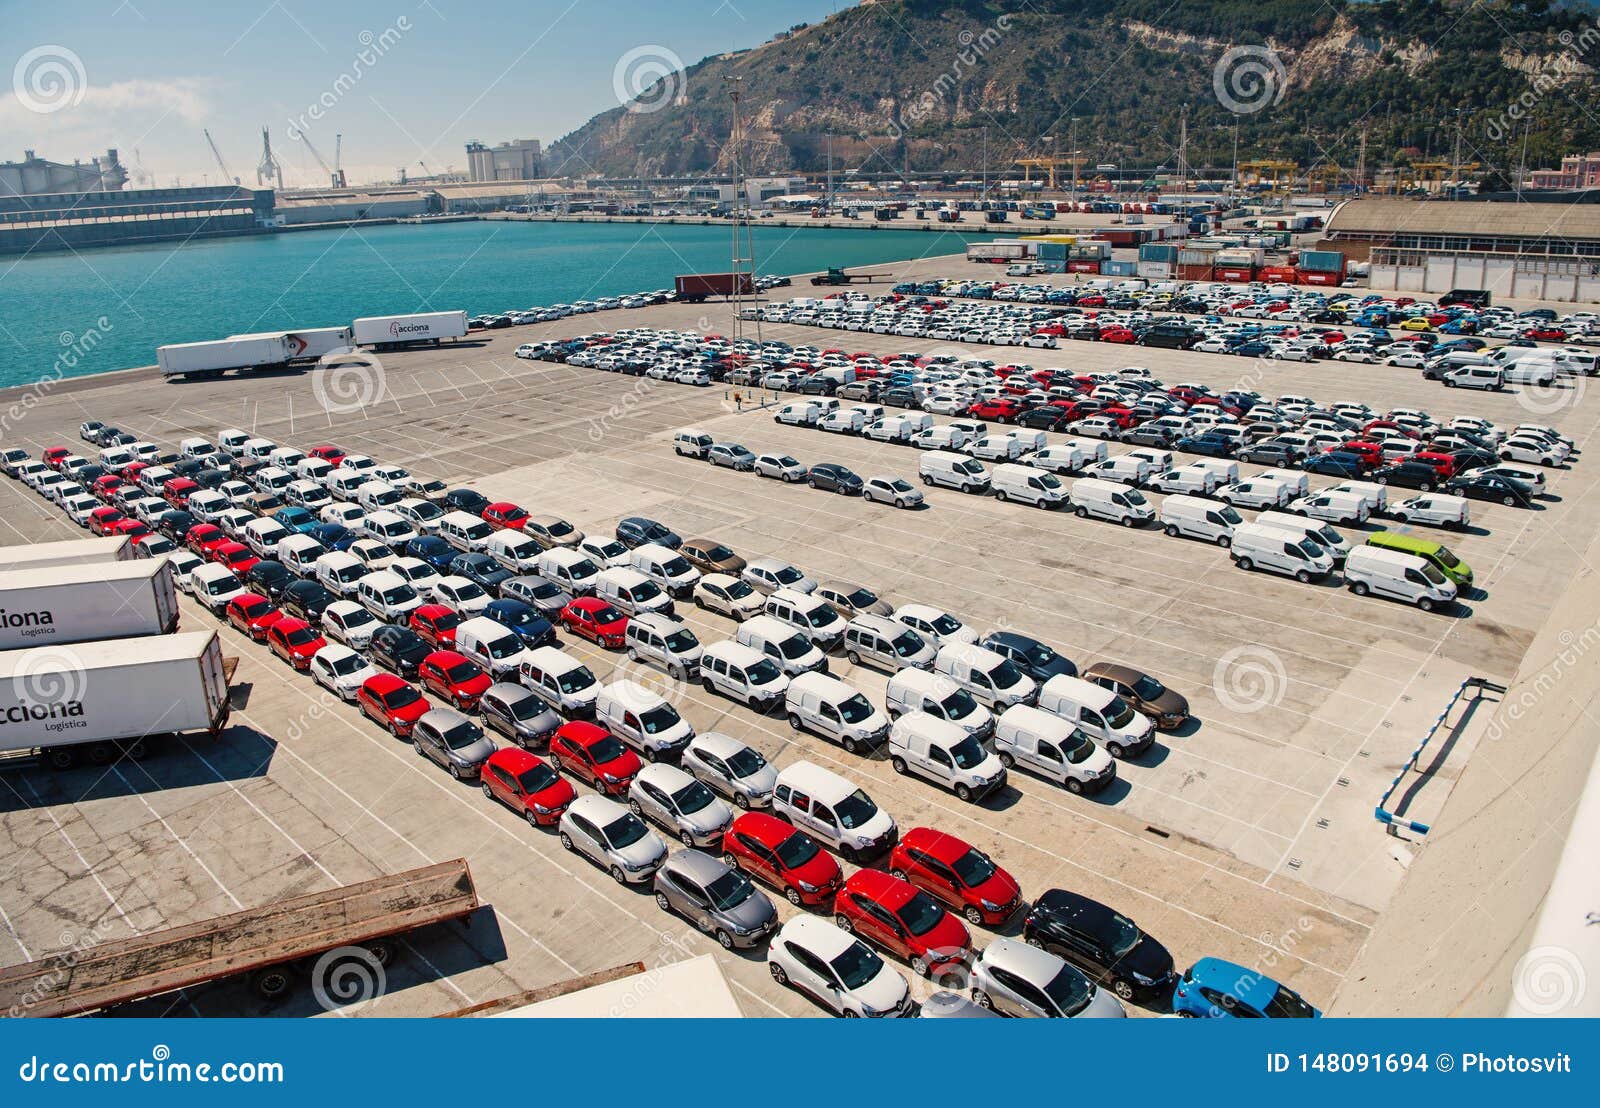 Авто из заграницы. Машины в порту. Торговля с машины. Автомобили в порту Японии. Стоянка автомобилей в порту.